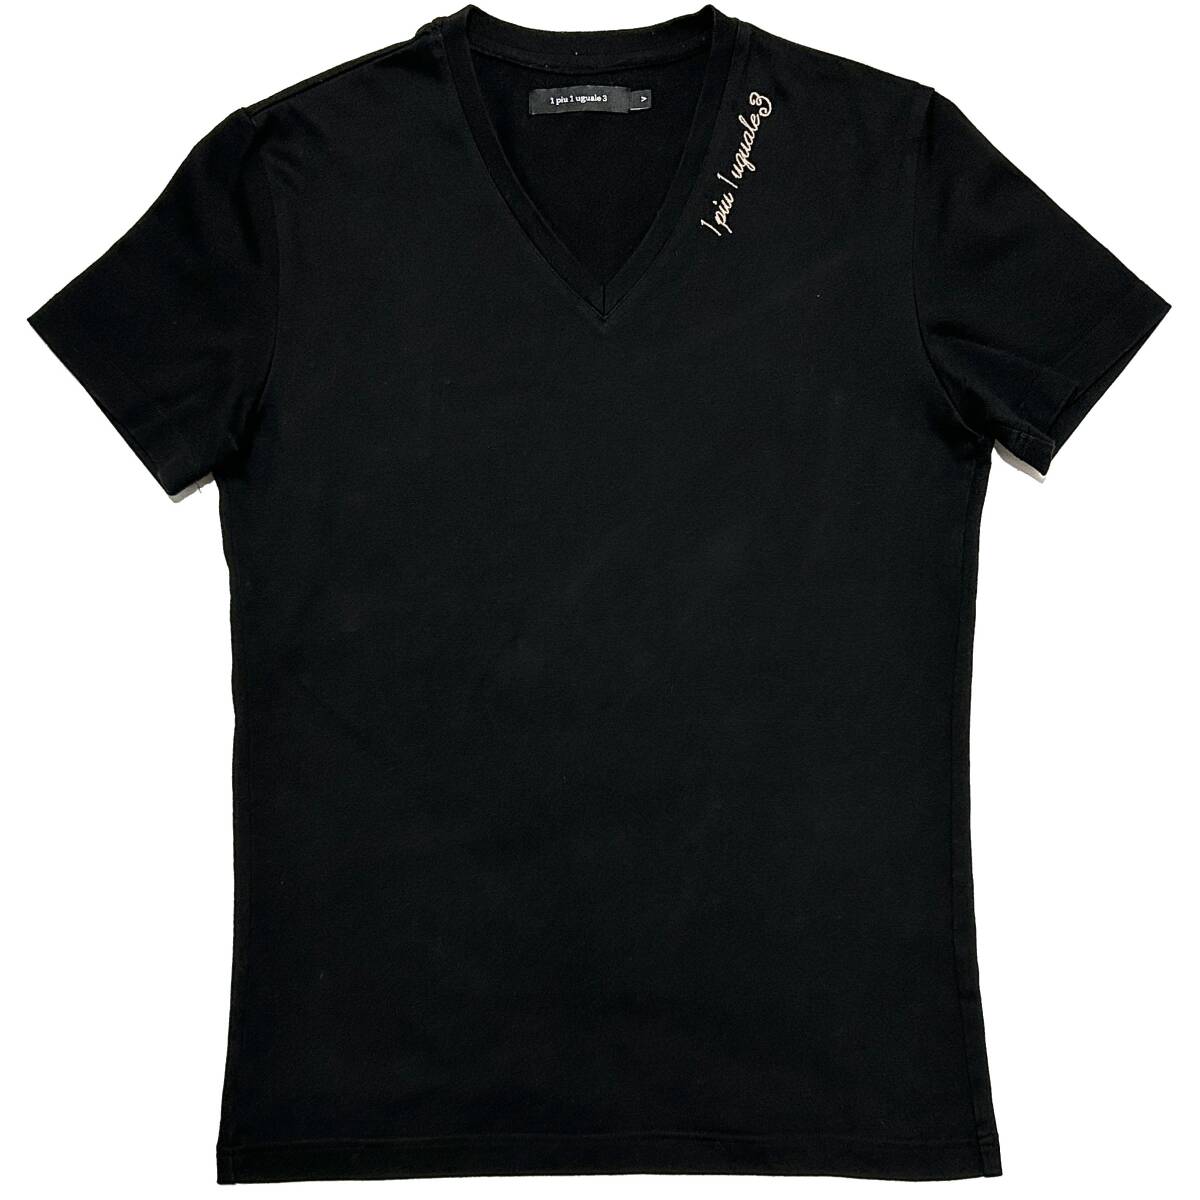 定価2万 1piu1uguale3 embroidery V-neck S/S tee Ⅴ ブラック ロゴ刺繍VネックTシャツ wjk akm ジュンハシモト